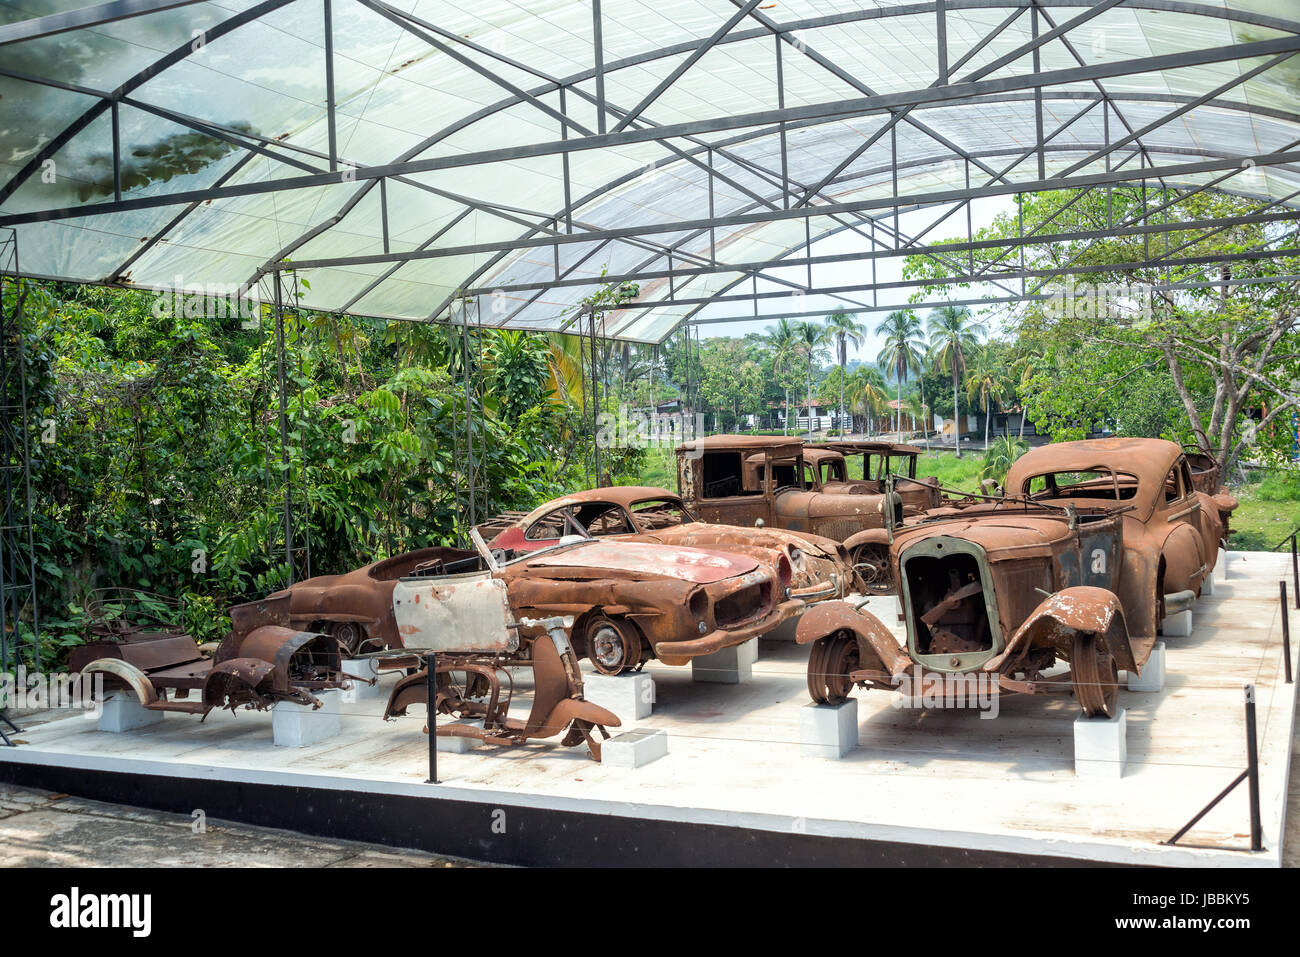 PUERTO TRIUNFO, COLOMBIA - 26 de febrero: una colección de coches  destruidos que perteneció a Pablo Escobar en exhibición en Puerto Triunfo,  Colombia el 26 de febrero de 2014. Pablo Escobar era